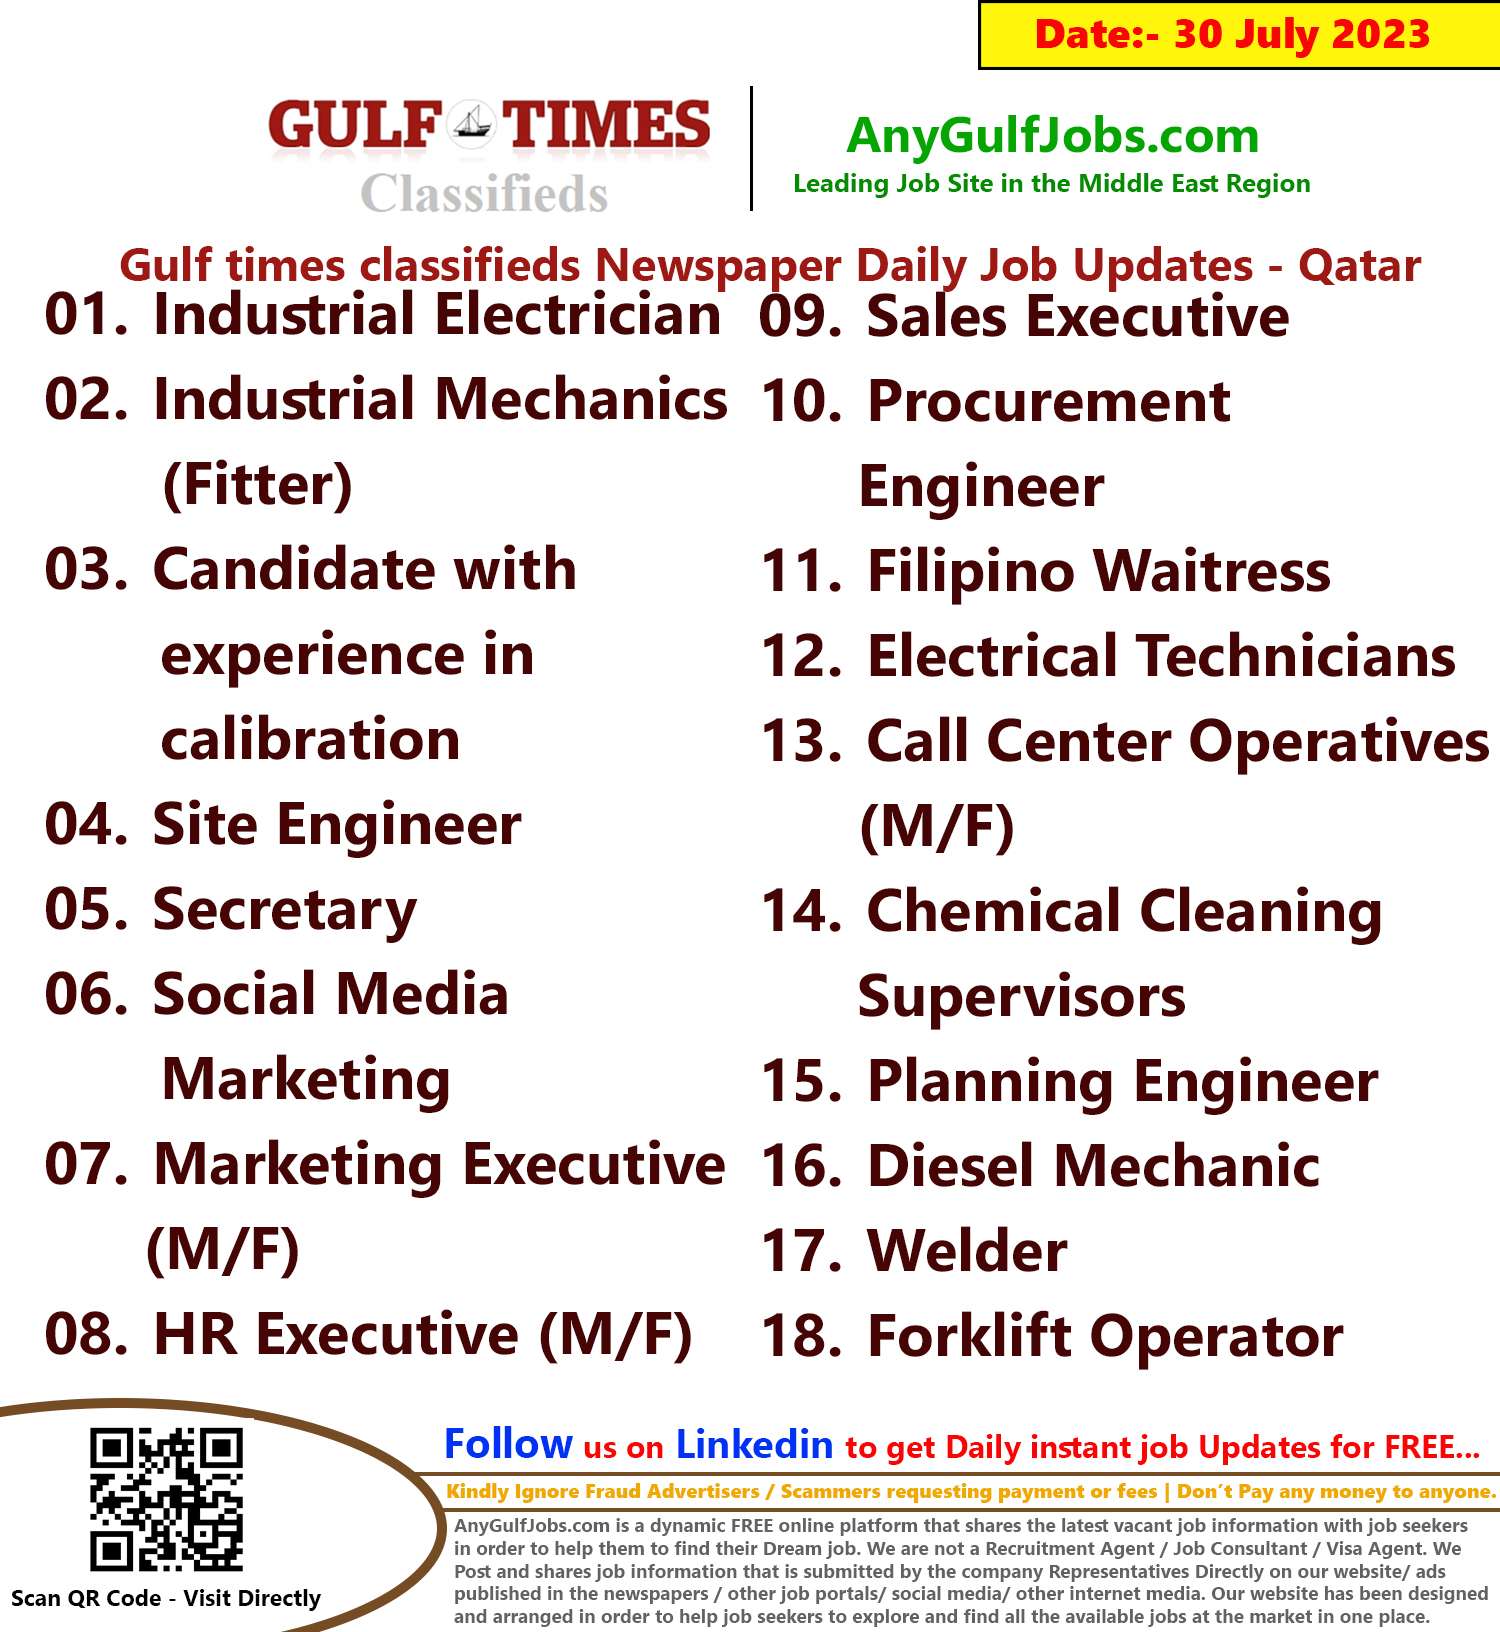 Gulf times classifieds Job Vacancies Qatar - 30 July 2023